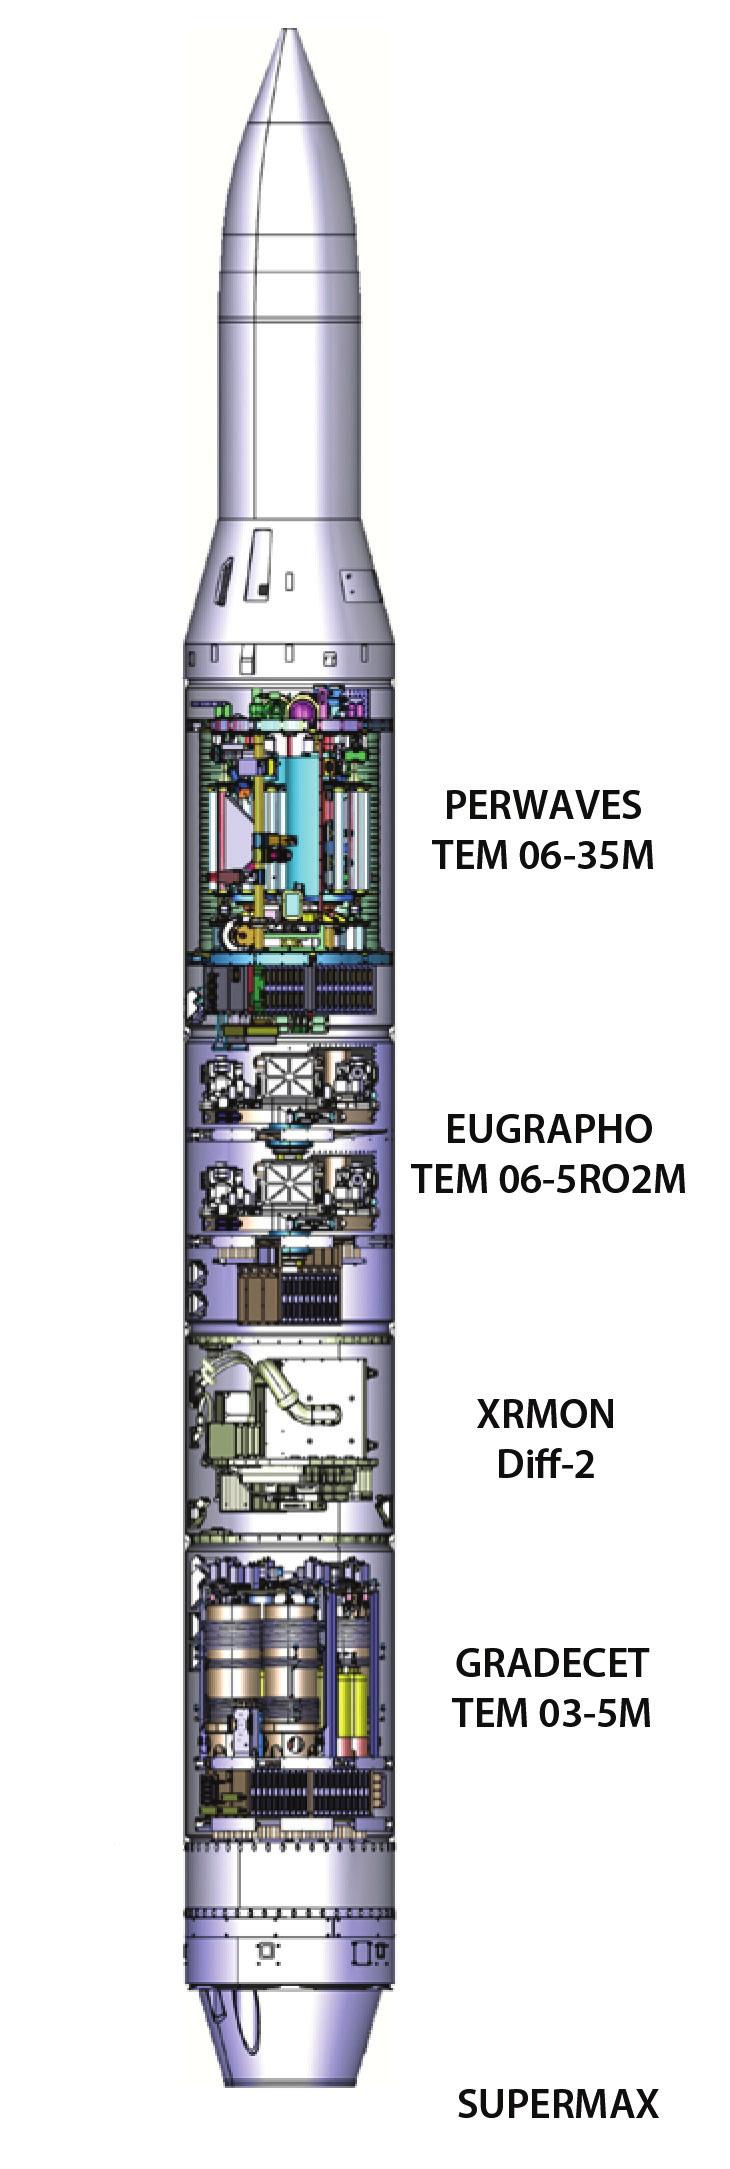 Forskningsraketen MAXUS 9 MAXUS är ett sondraketprogram för forskning i nära tyngdlöshet (mikrogravitation) som drivs i samarbete mellan SSC (Swedish Space Corporation) och Airbus, Tyskland.